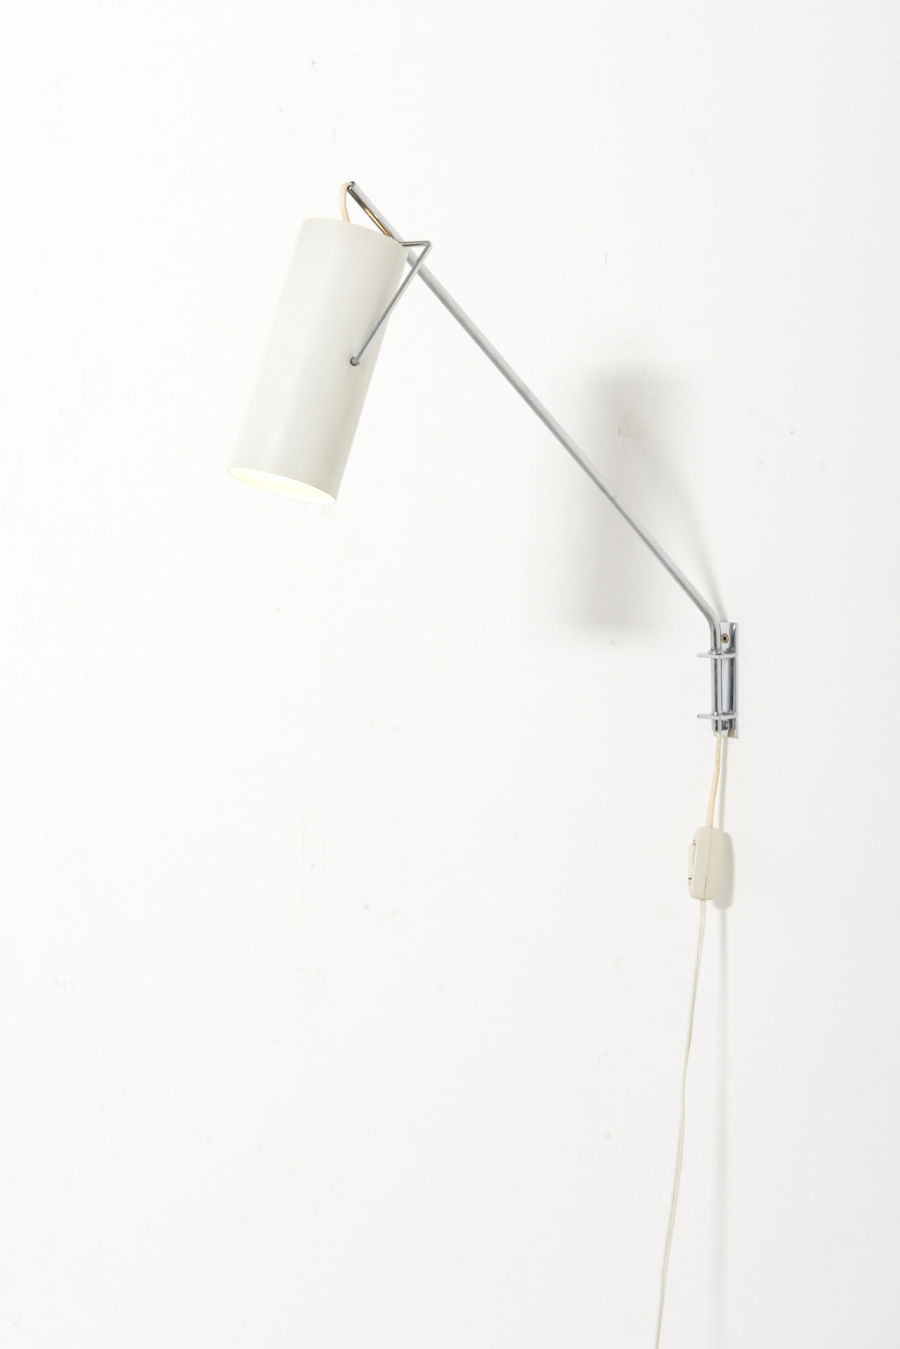 modestfurniture-vintage-2876-raak-swing-arm-wall-lamp-model-model-c1582-3701